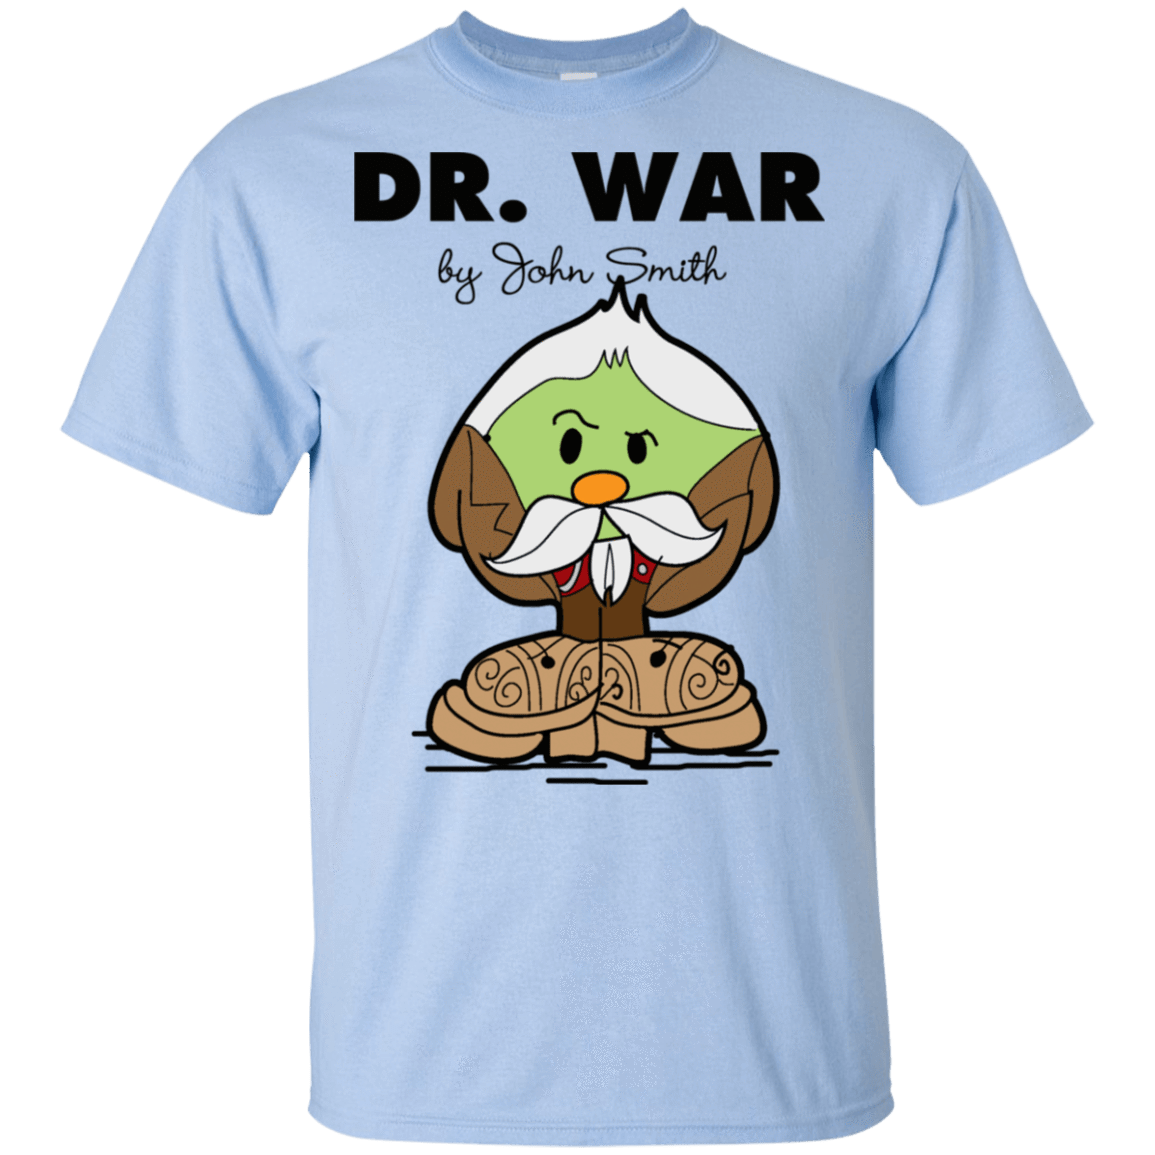 T-Shirts Light Blue / S Dr War T-Shirt